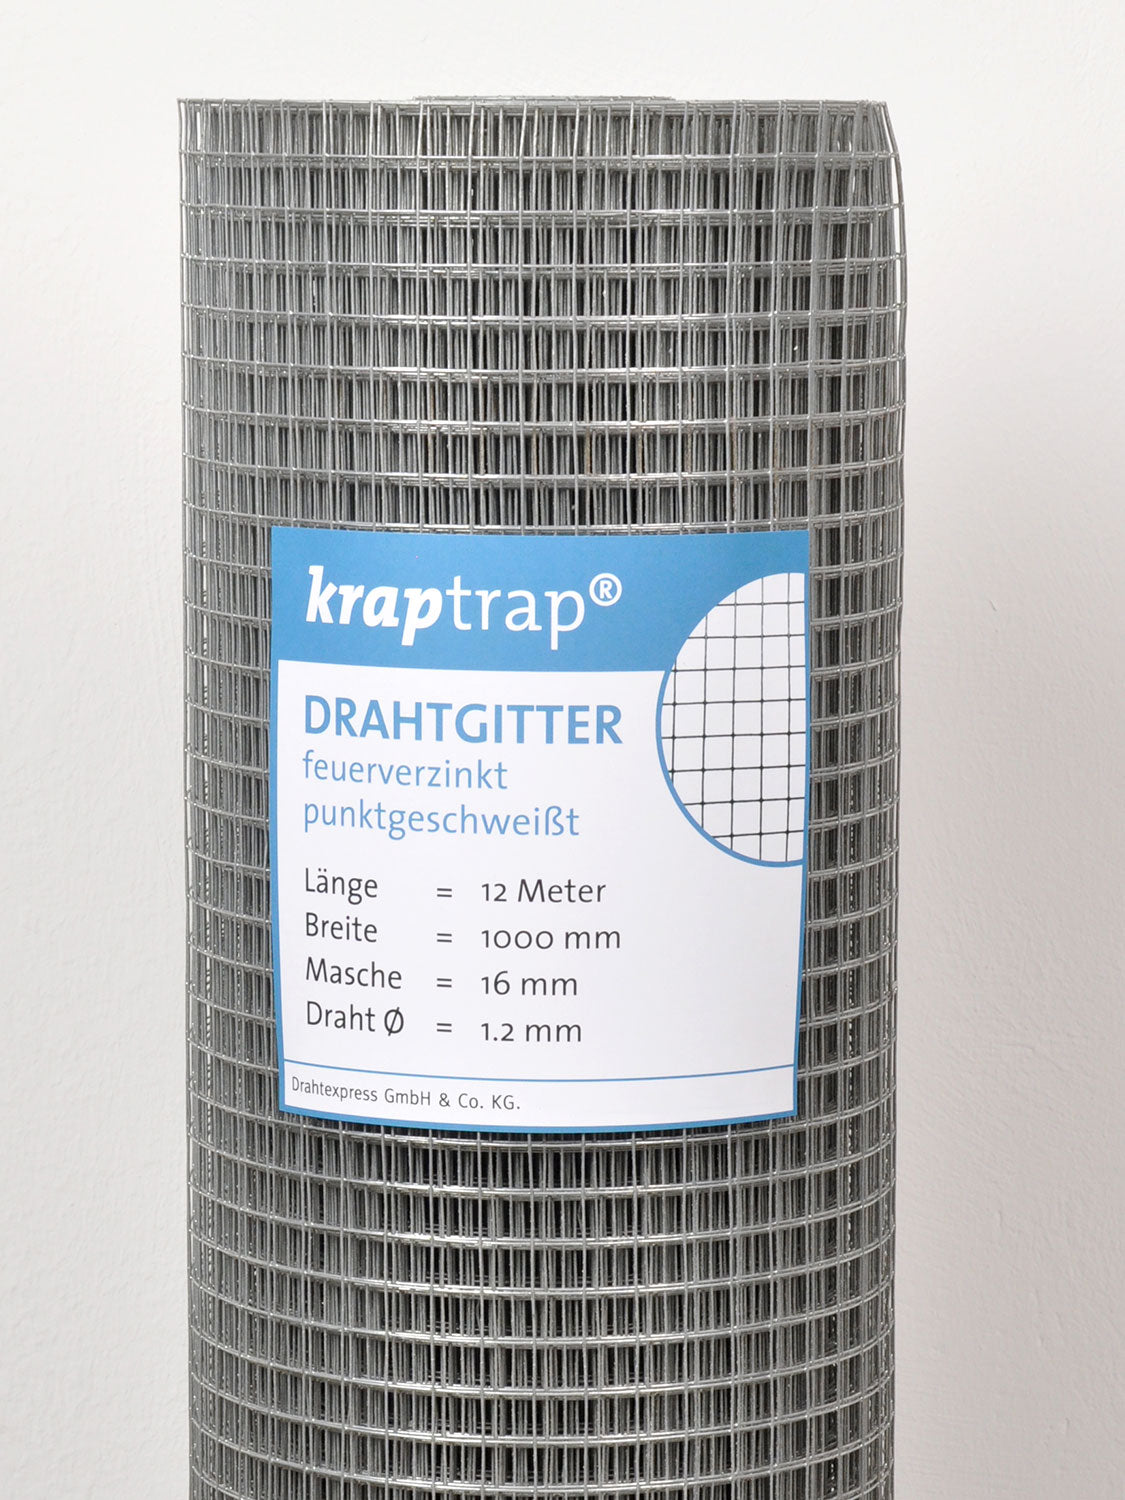 Kraptrap® Volierendraht Drahtgitter 16 mm Masche, 100 cm breit, 1,2mm Drahtstärke